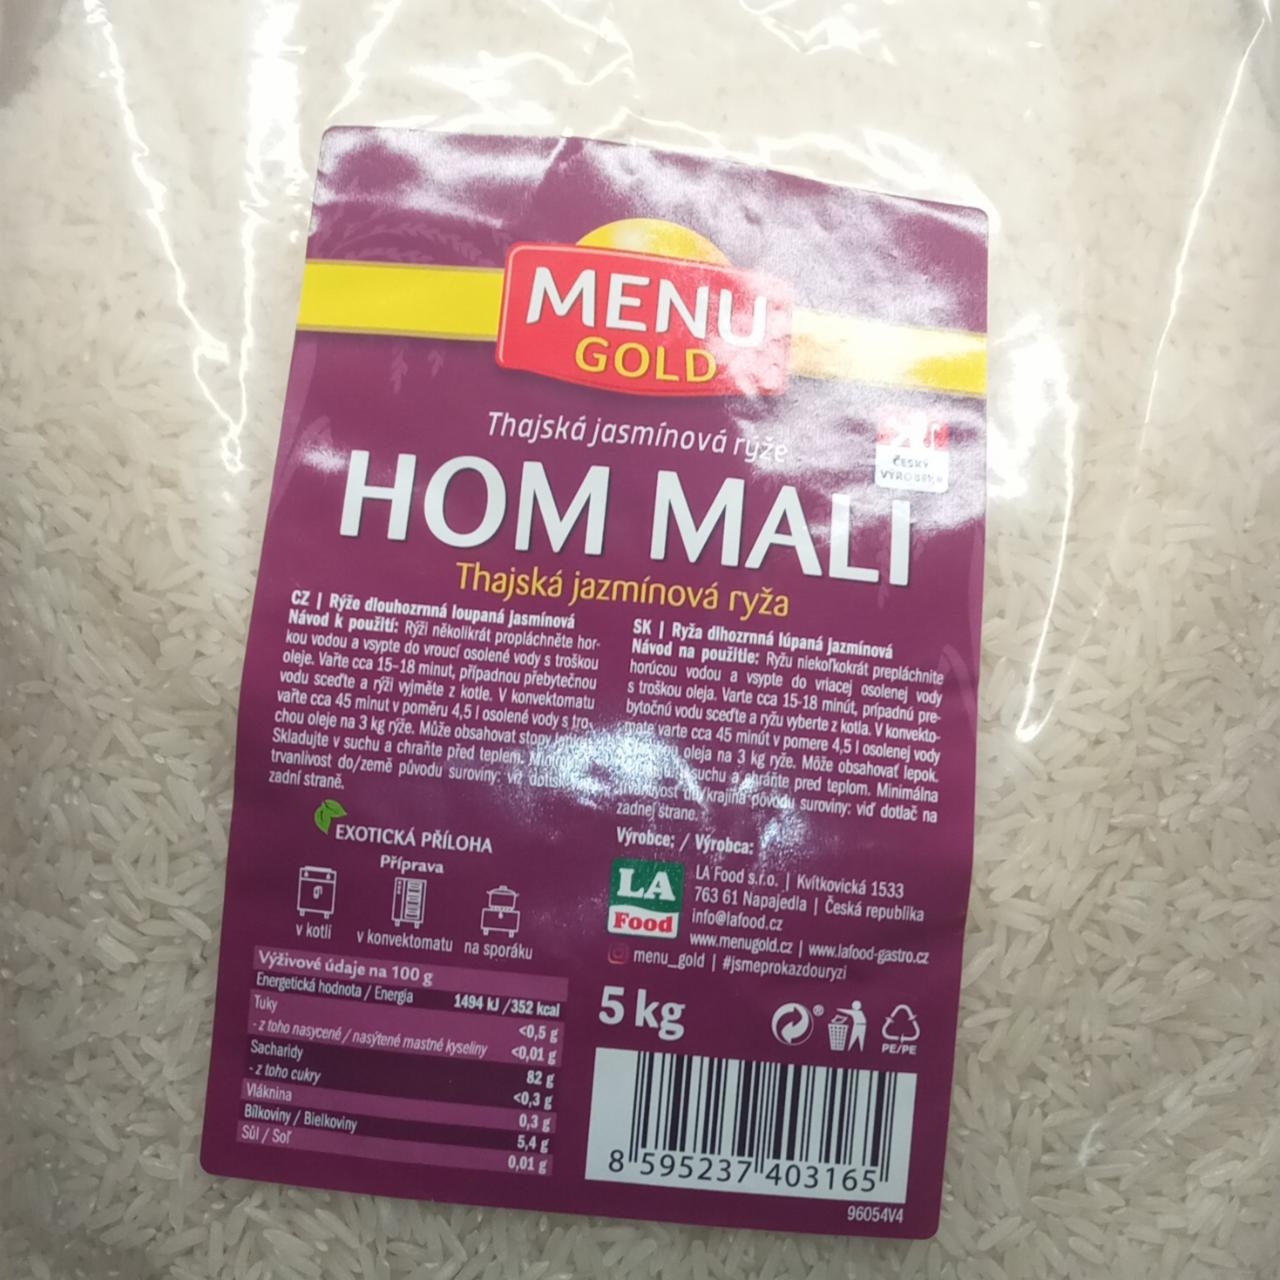 Fotografie - Thajská jasmínová rýže Hom Mali Menu Gold